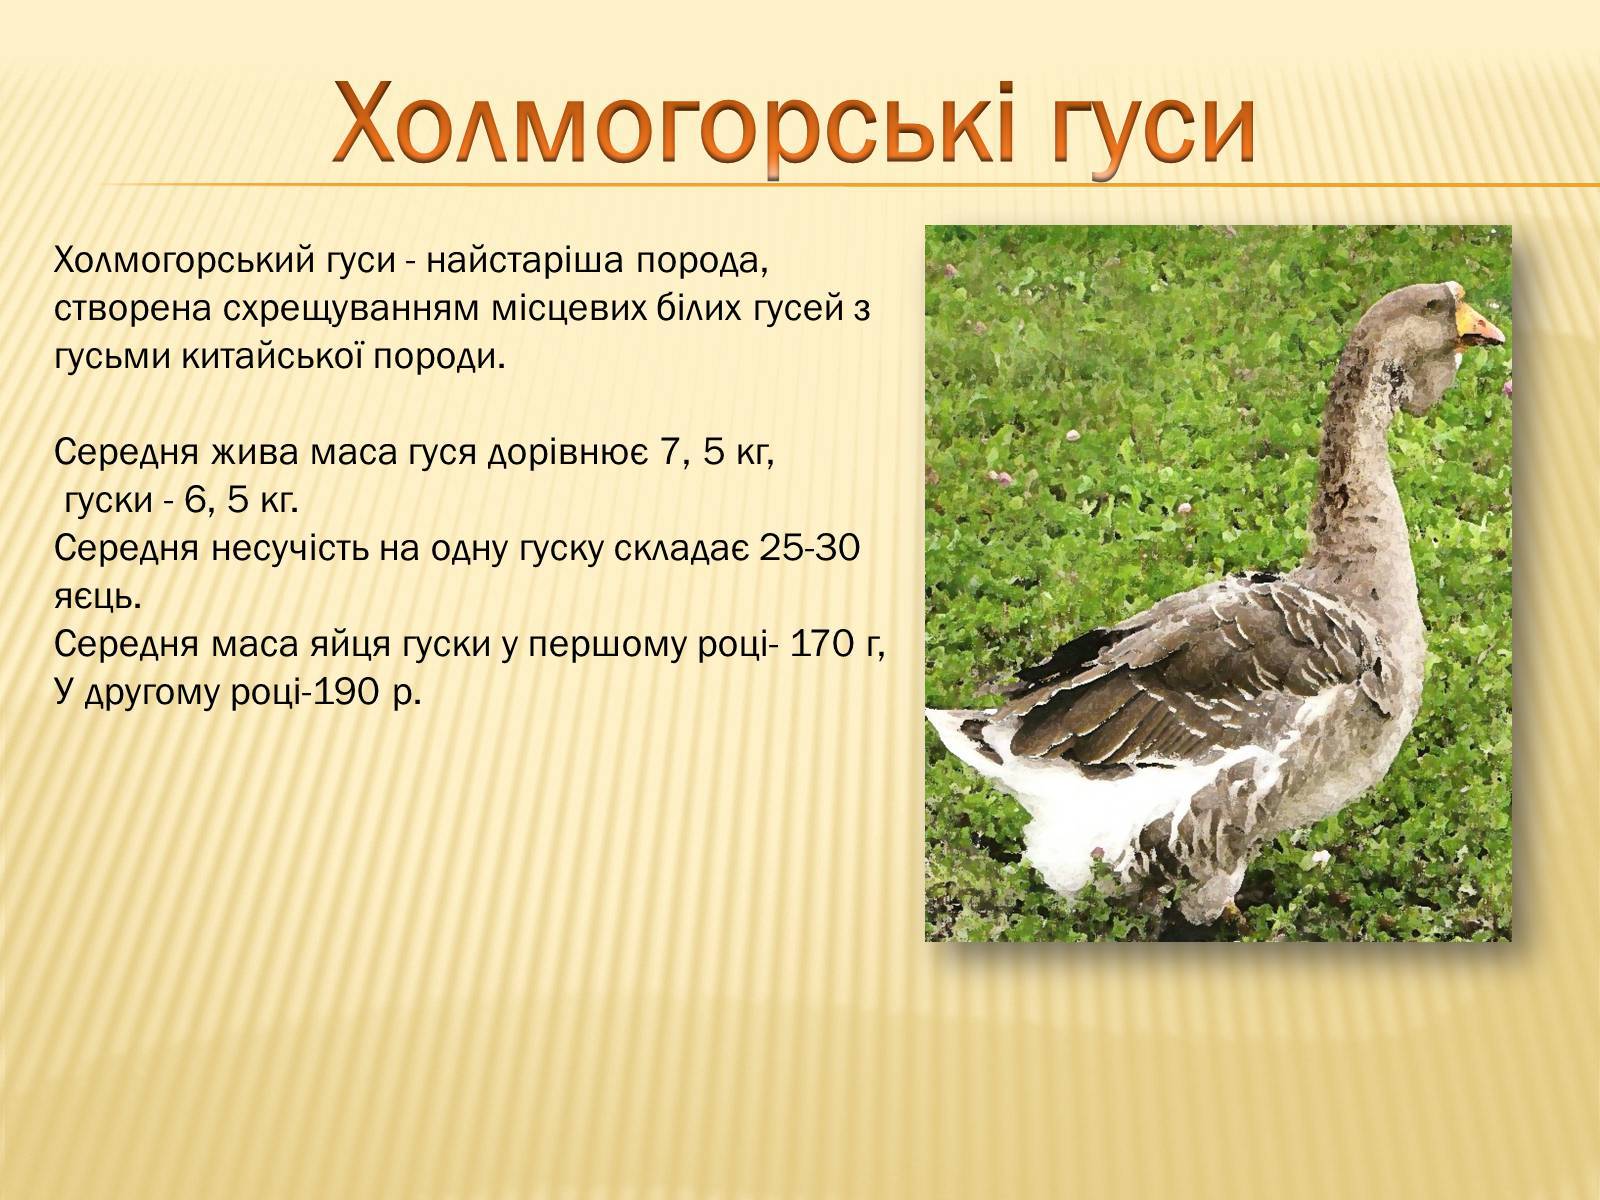 Крупная серая порода гусей: фото, описание, характеристики